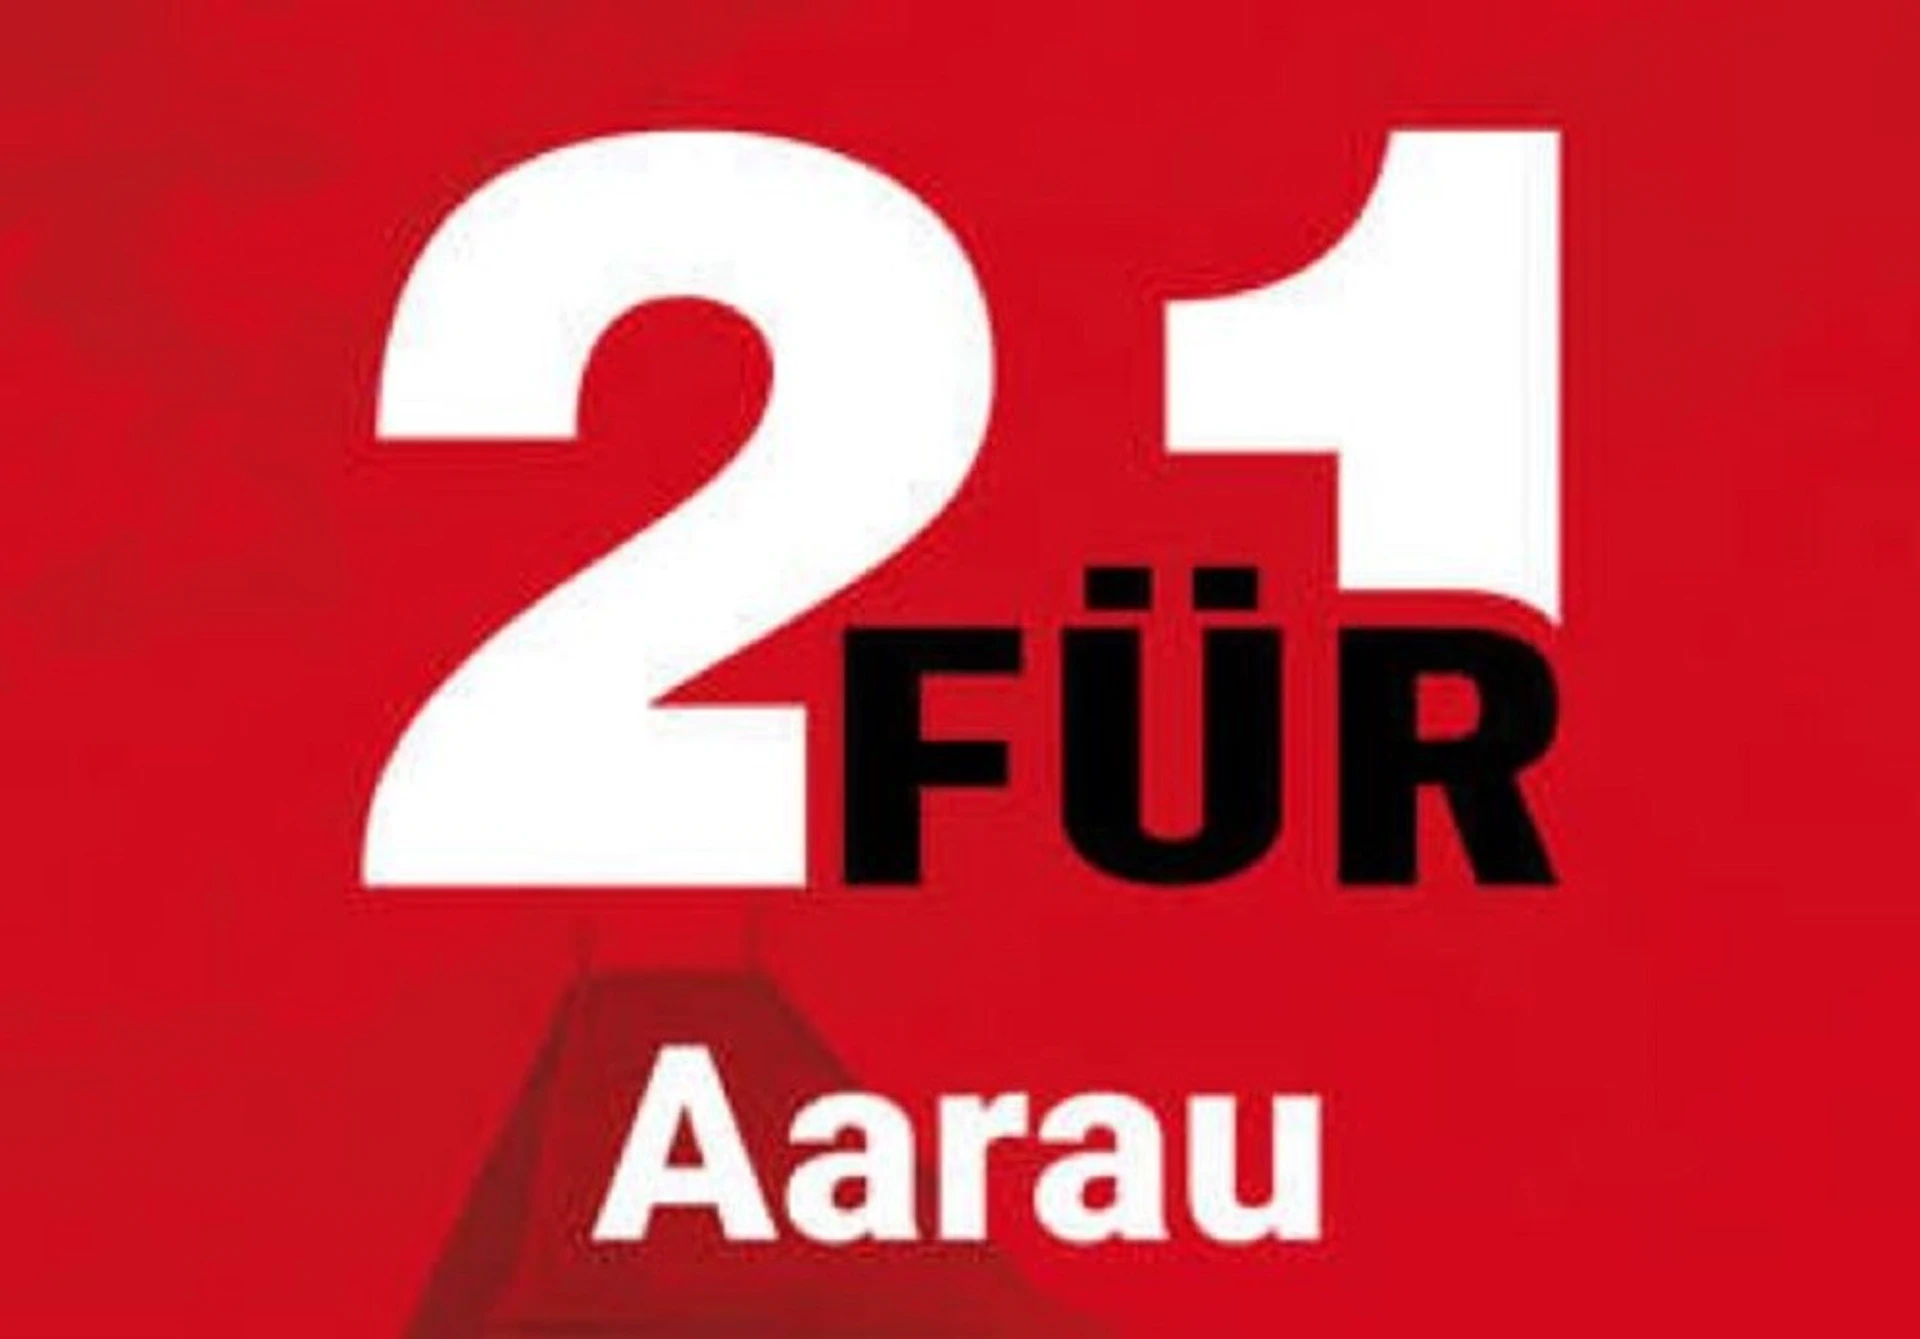 2für1 GmbH